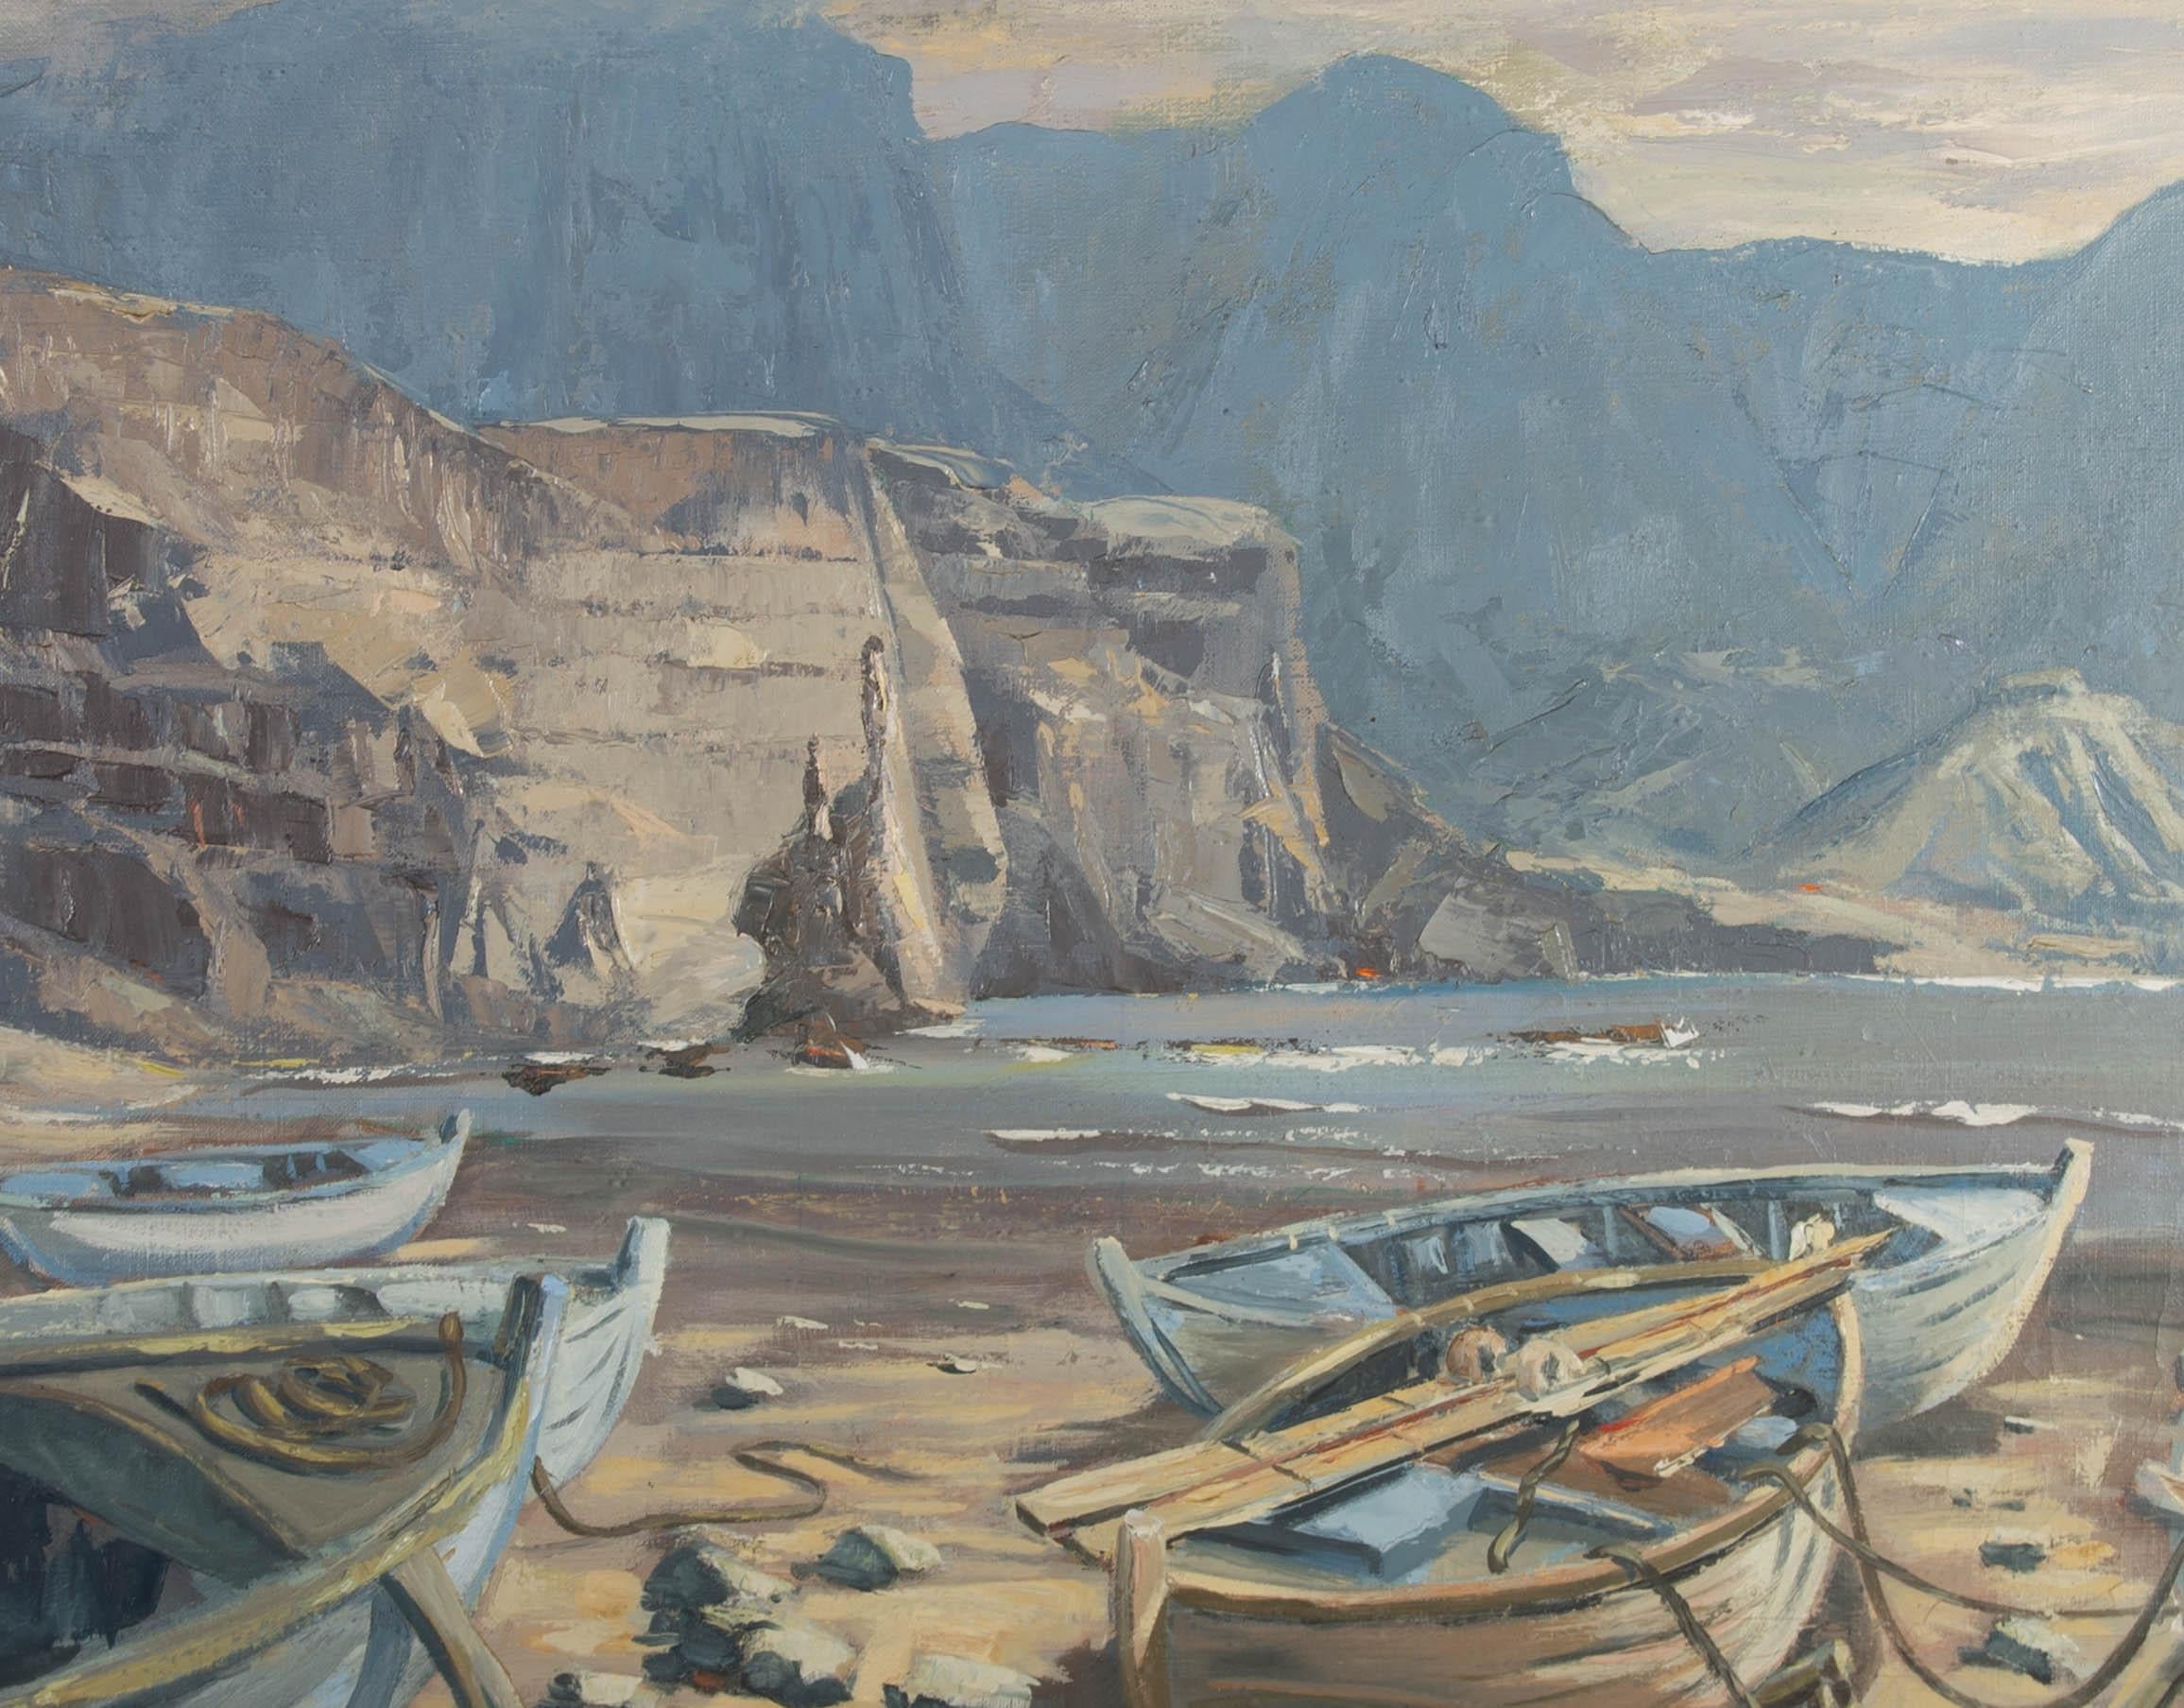 John Reed (b.1933) - Early 20th Century Oil, The Barren Rocks of Aden 1